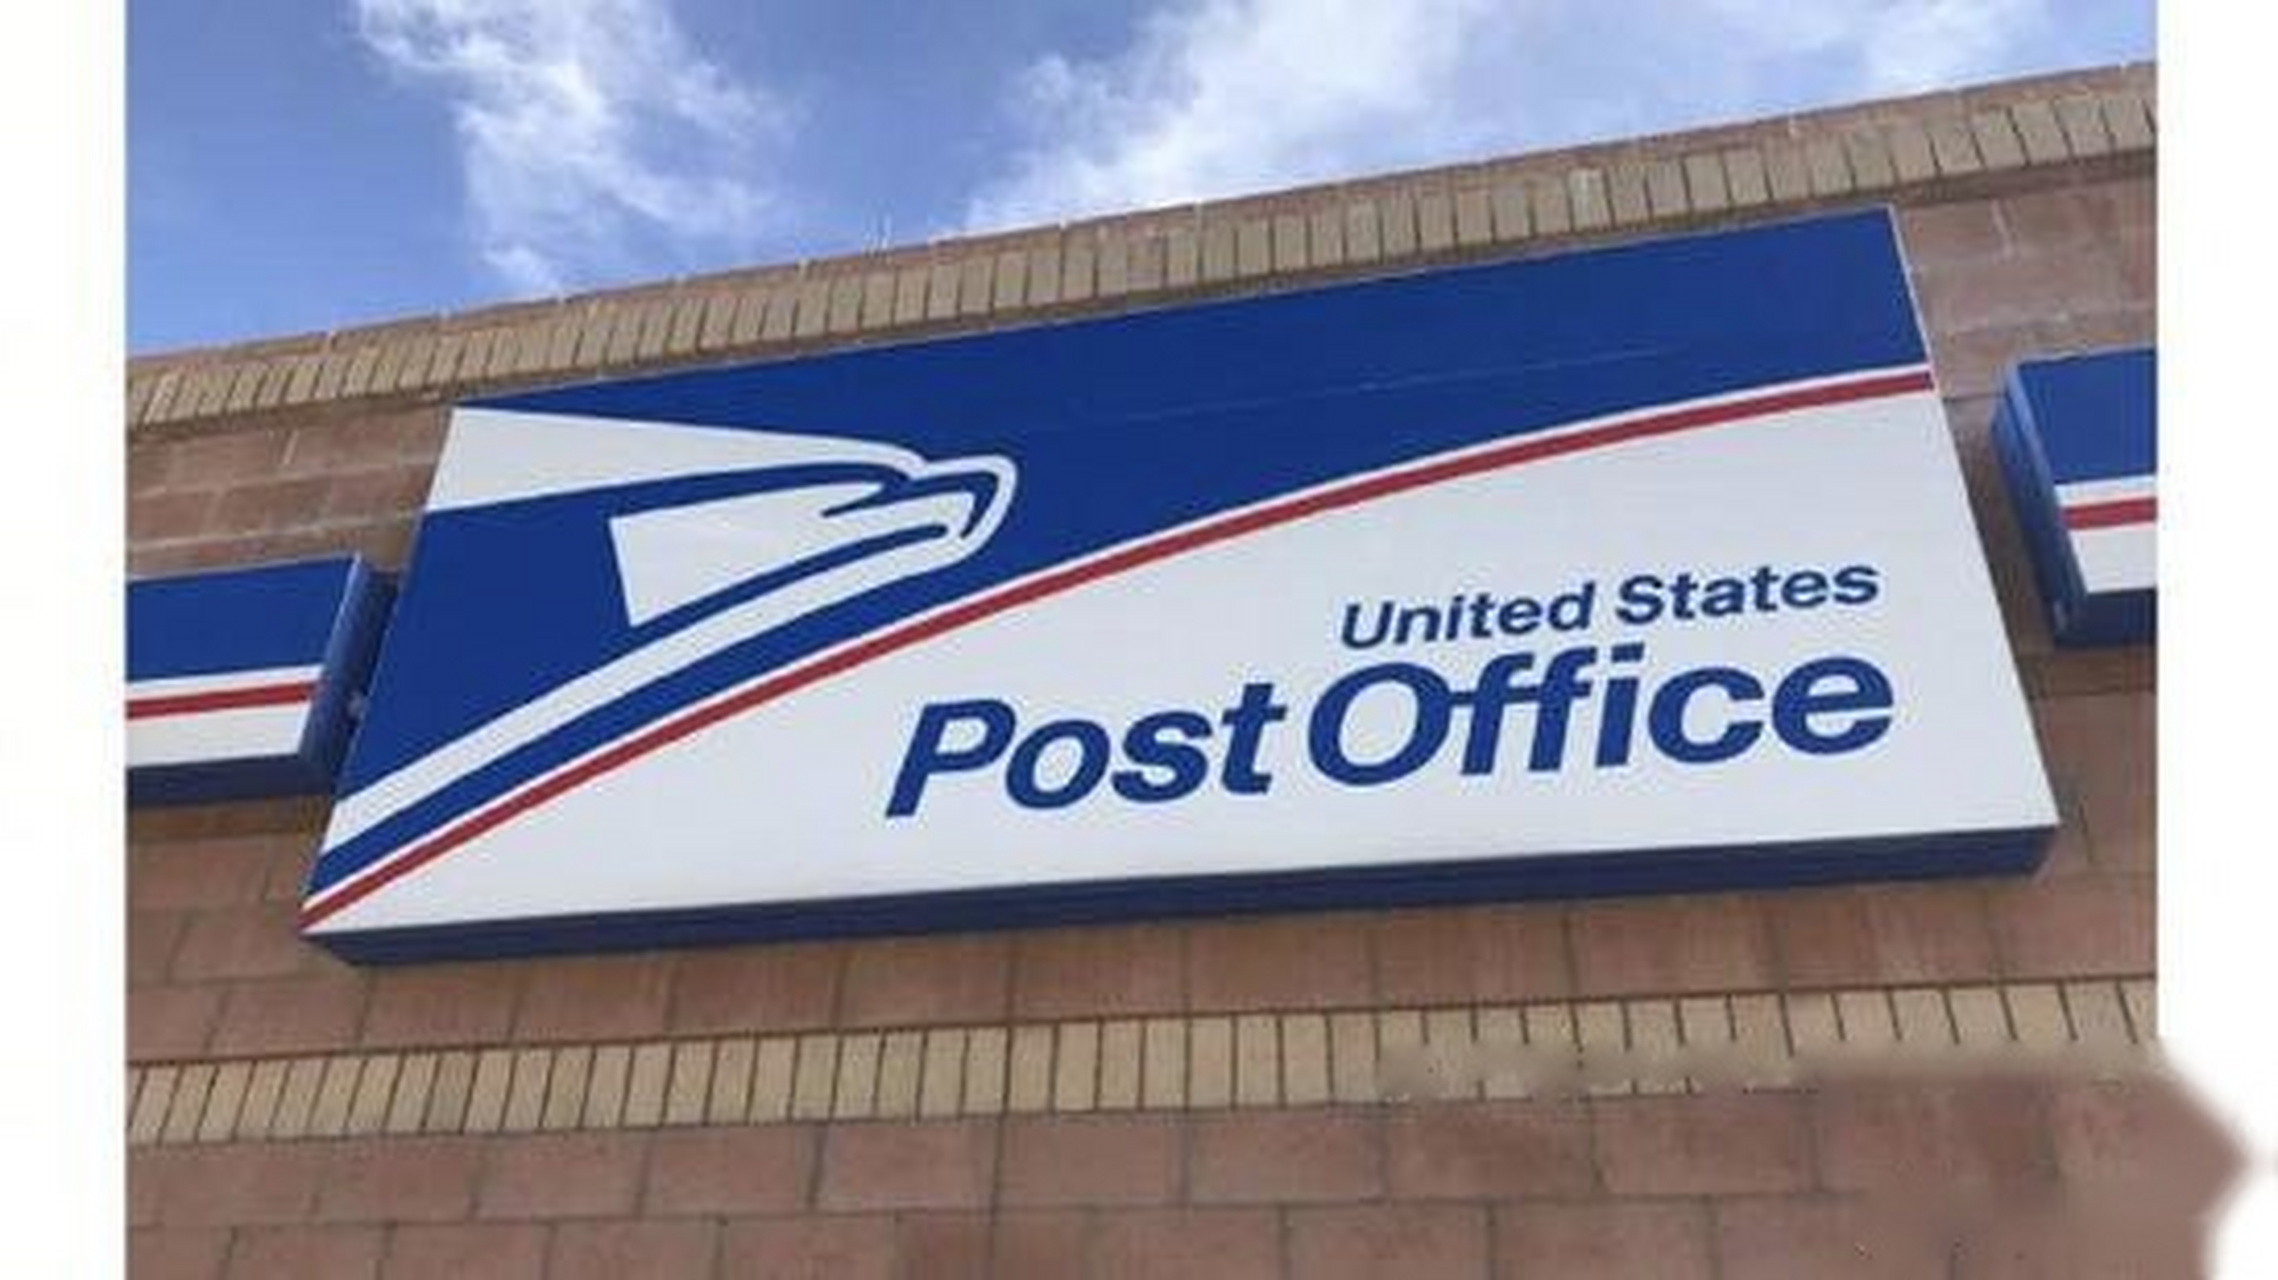 【美国邮政局面临破产危机 申请政府援助被拒】美国邮